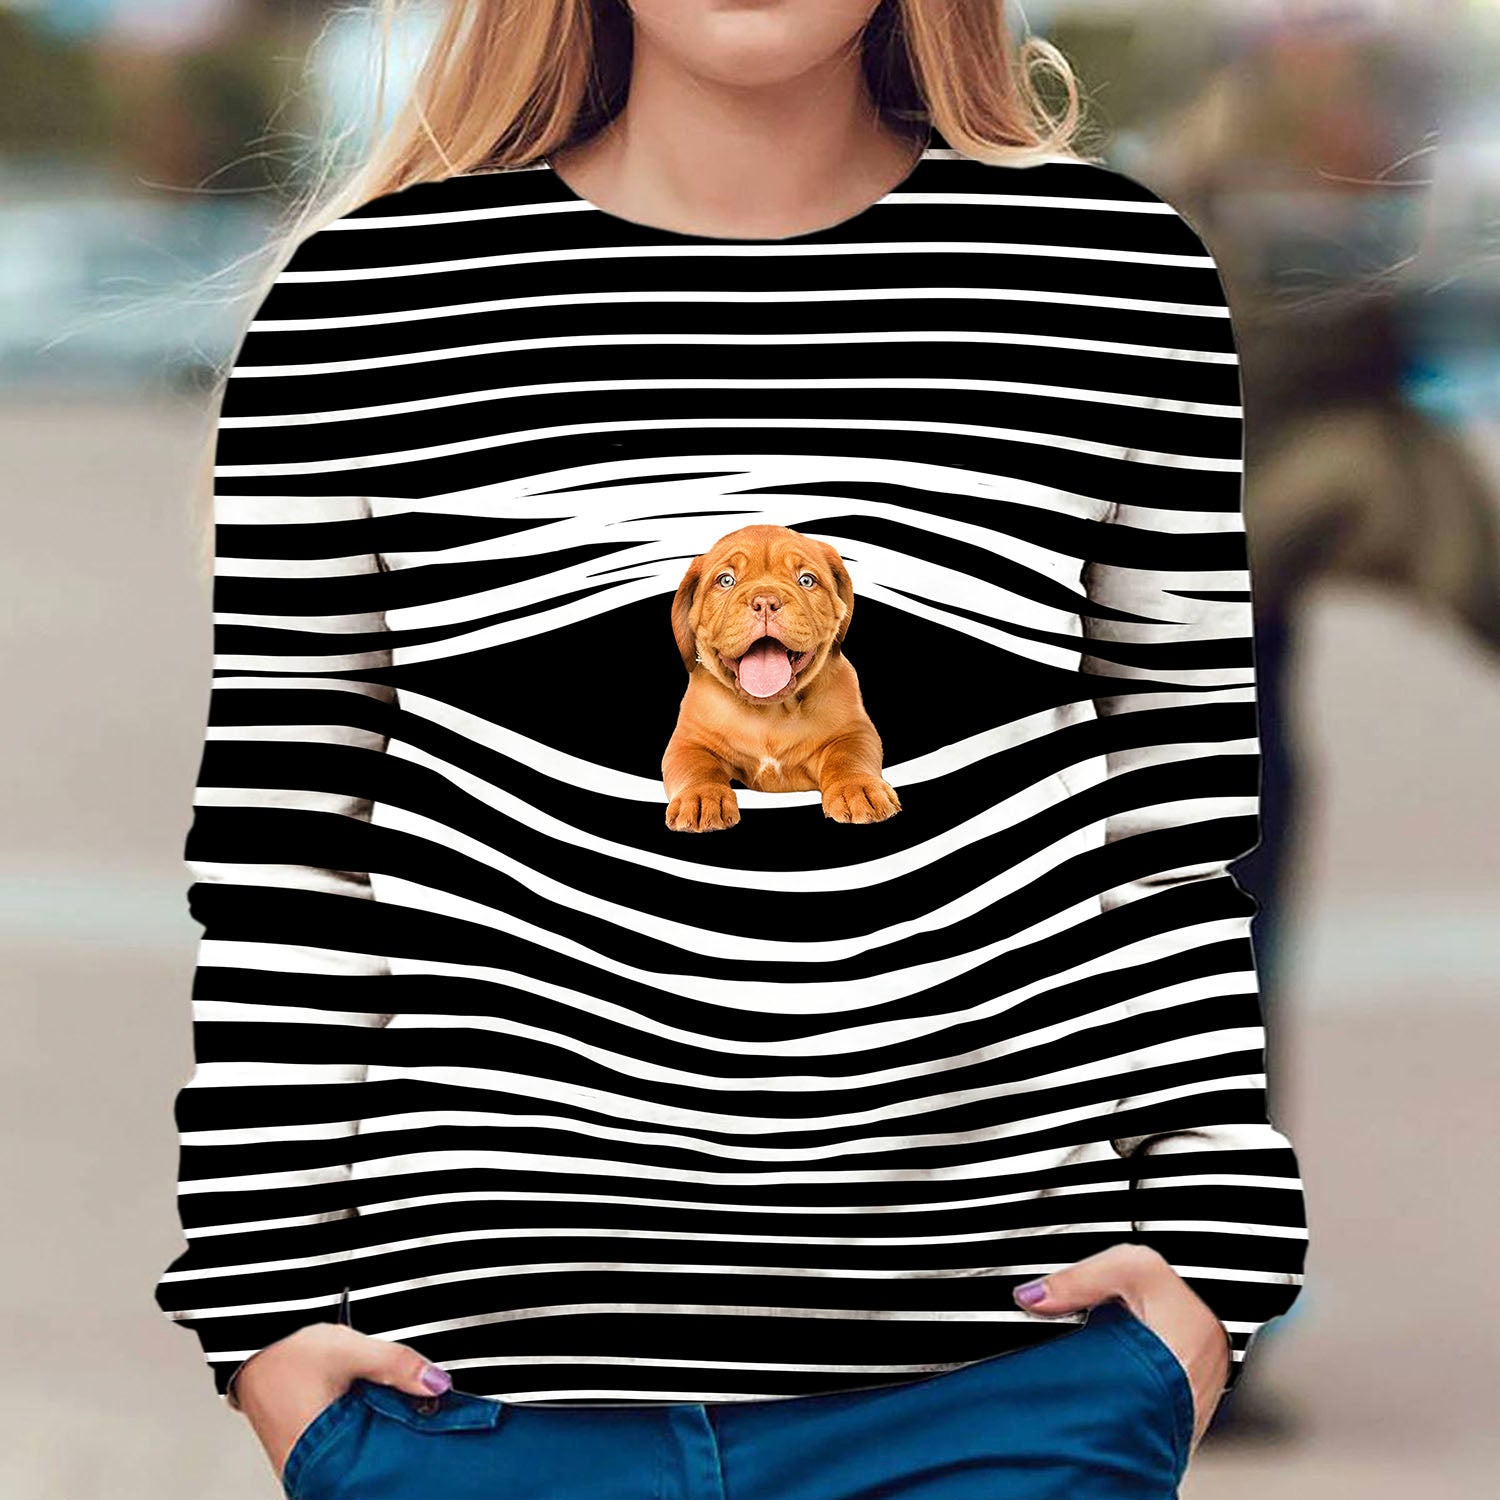 Dogue De Bordeaux - Stripe - Premium Sweater